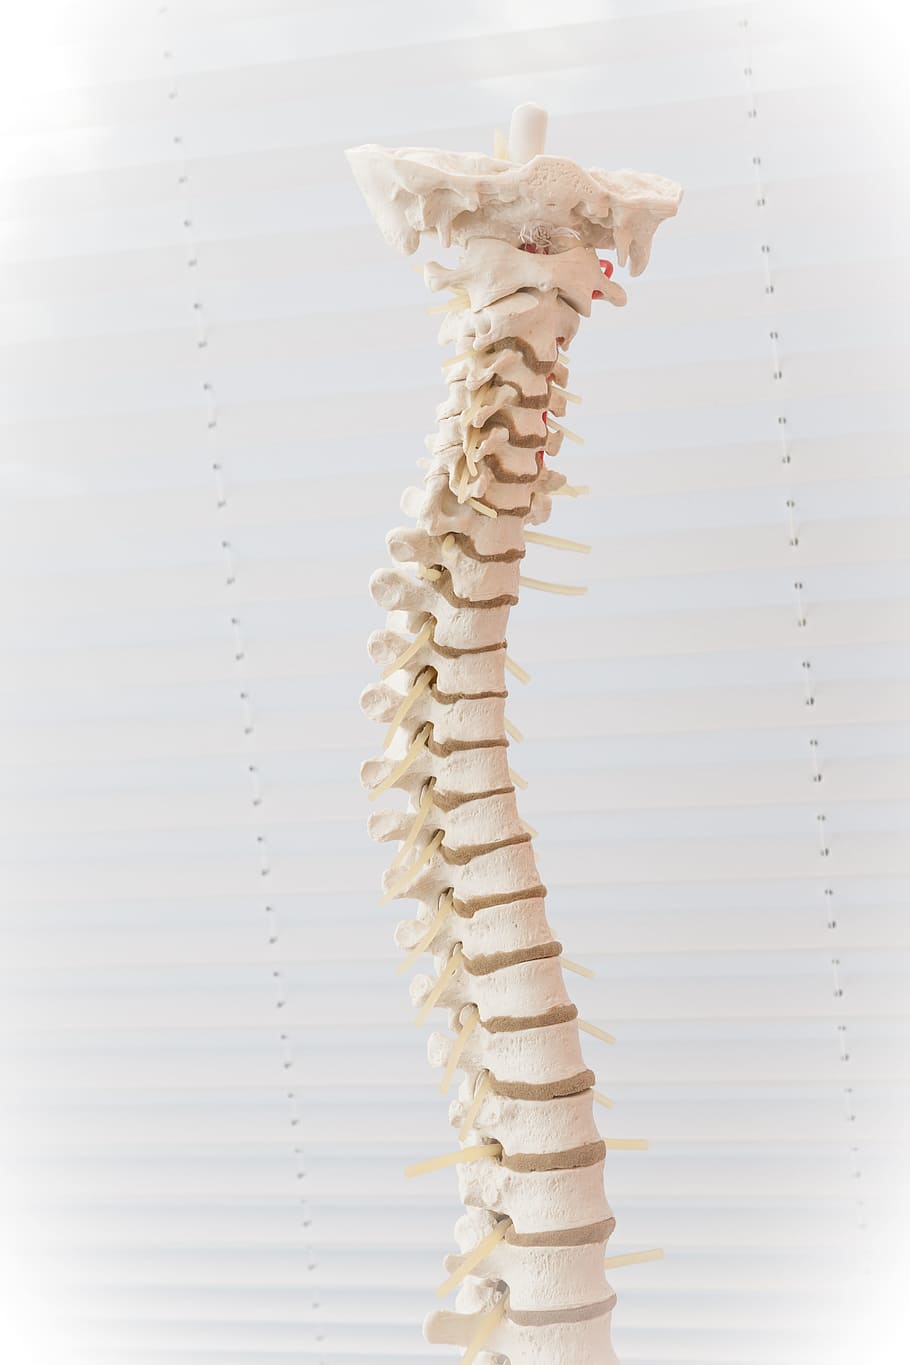 사람의, 척추 뼈 장식, 척추, 디스크, 움직임, 요추 추간판 탈출증, 질병, 의료, 뼈, 고치다